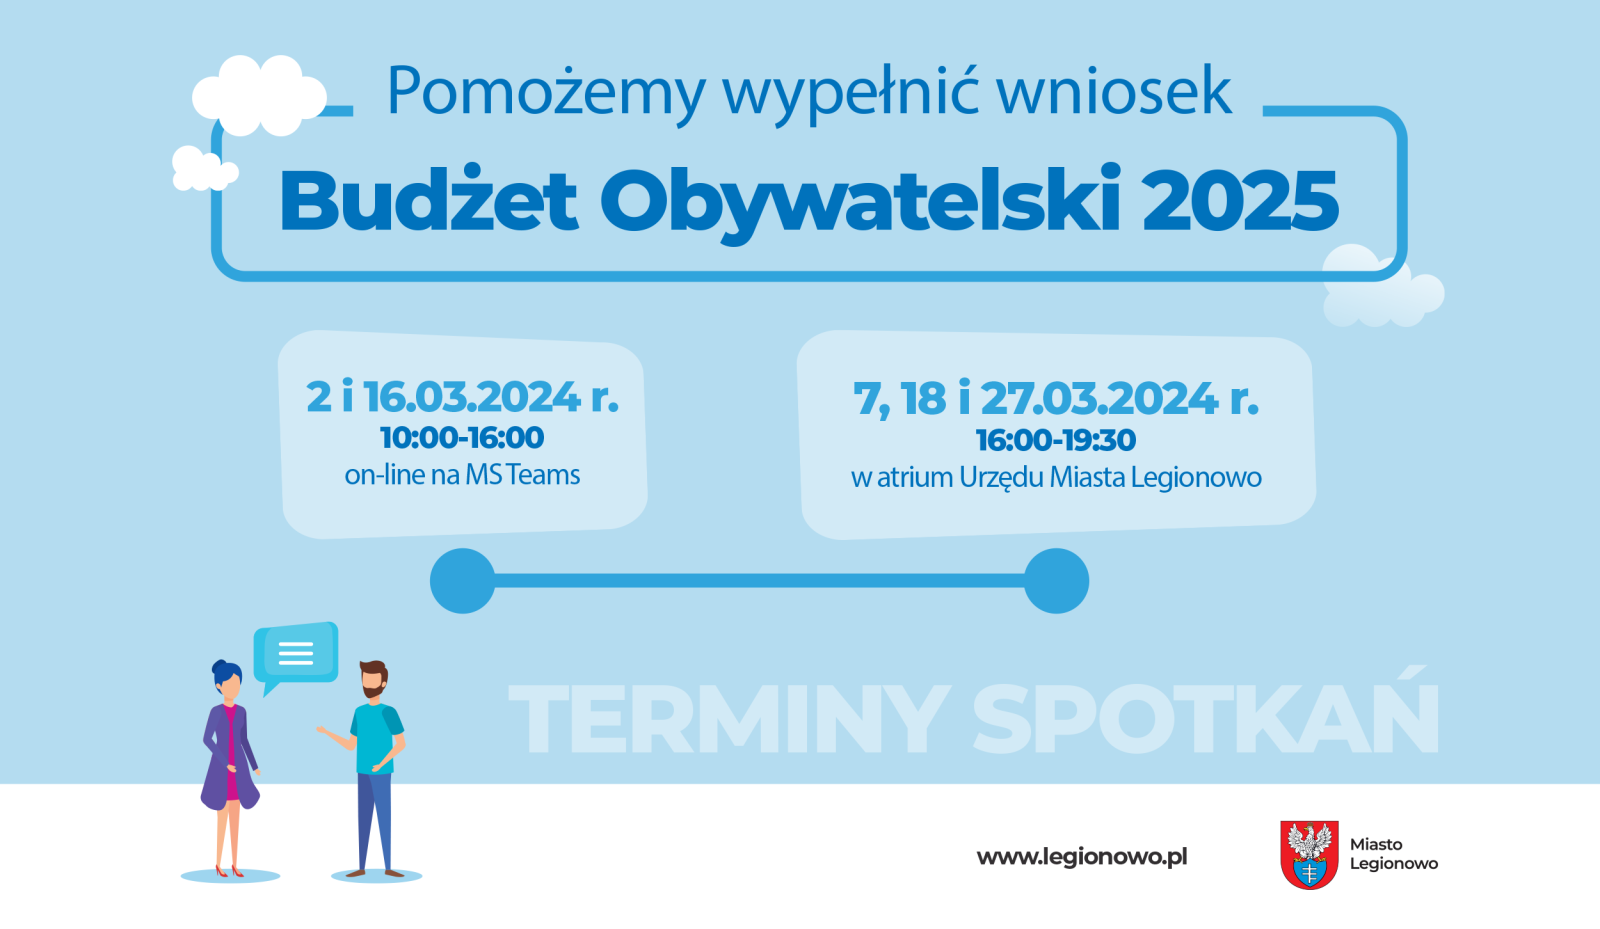 Grafika promująca terminy w ramach spotkań budżetu obywatelskiego